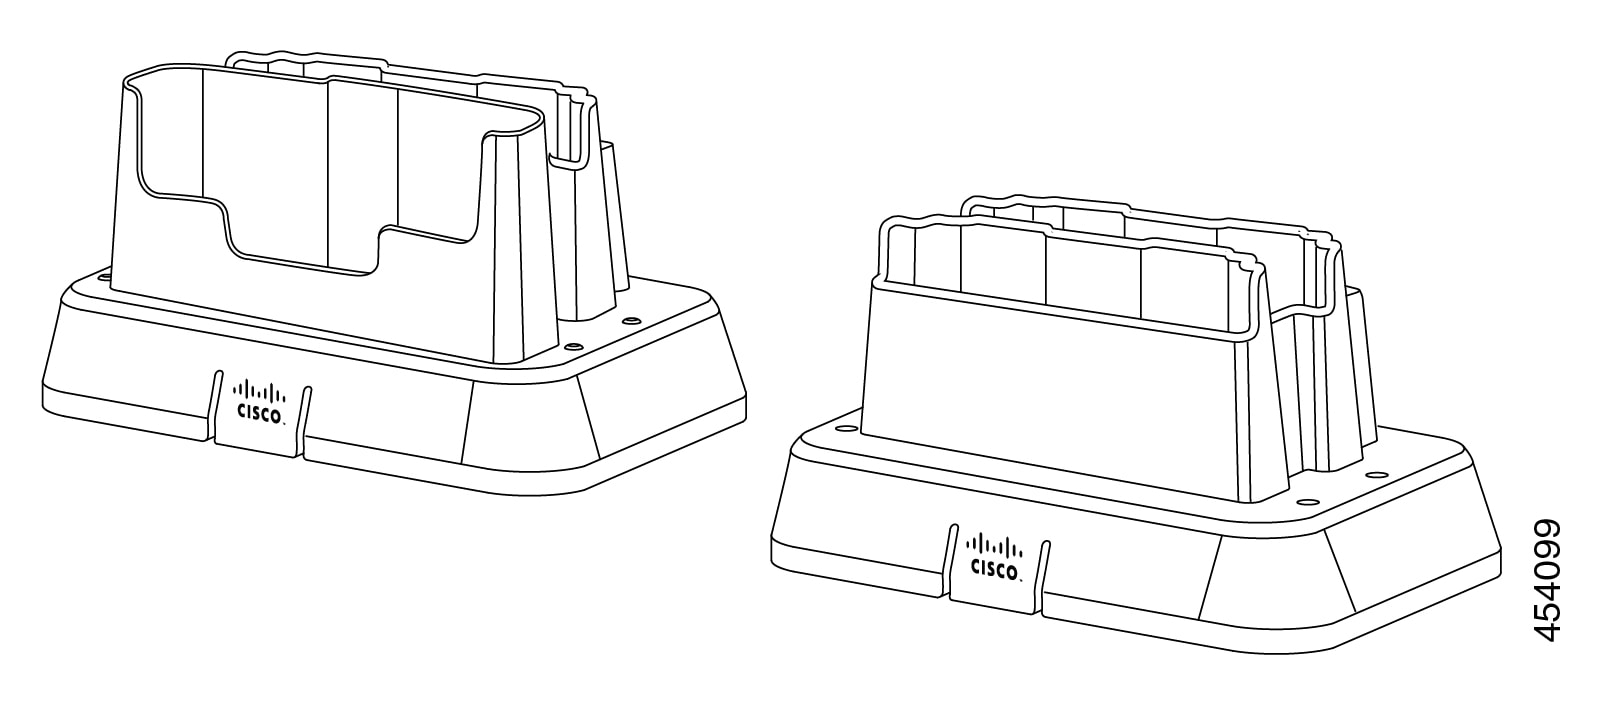 Illustratie van een dubbele 860-bureaubladladermodule en een 860-desktopbatterijladermodule.